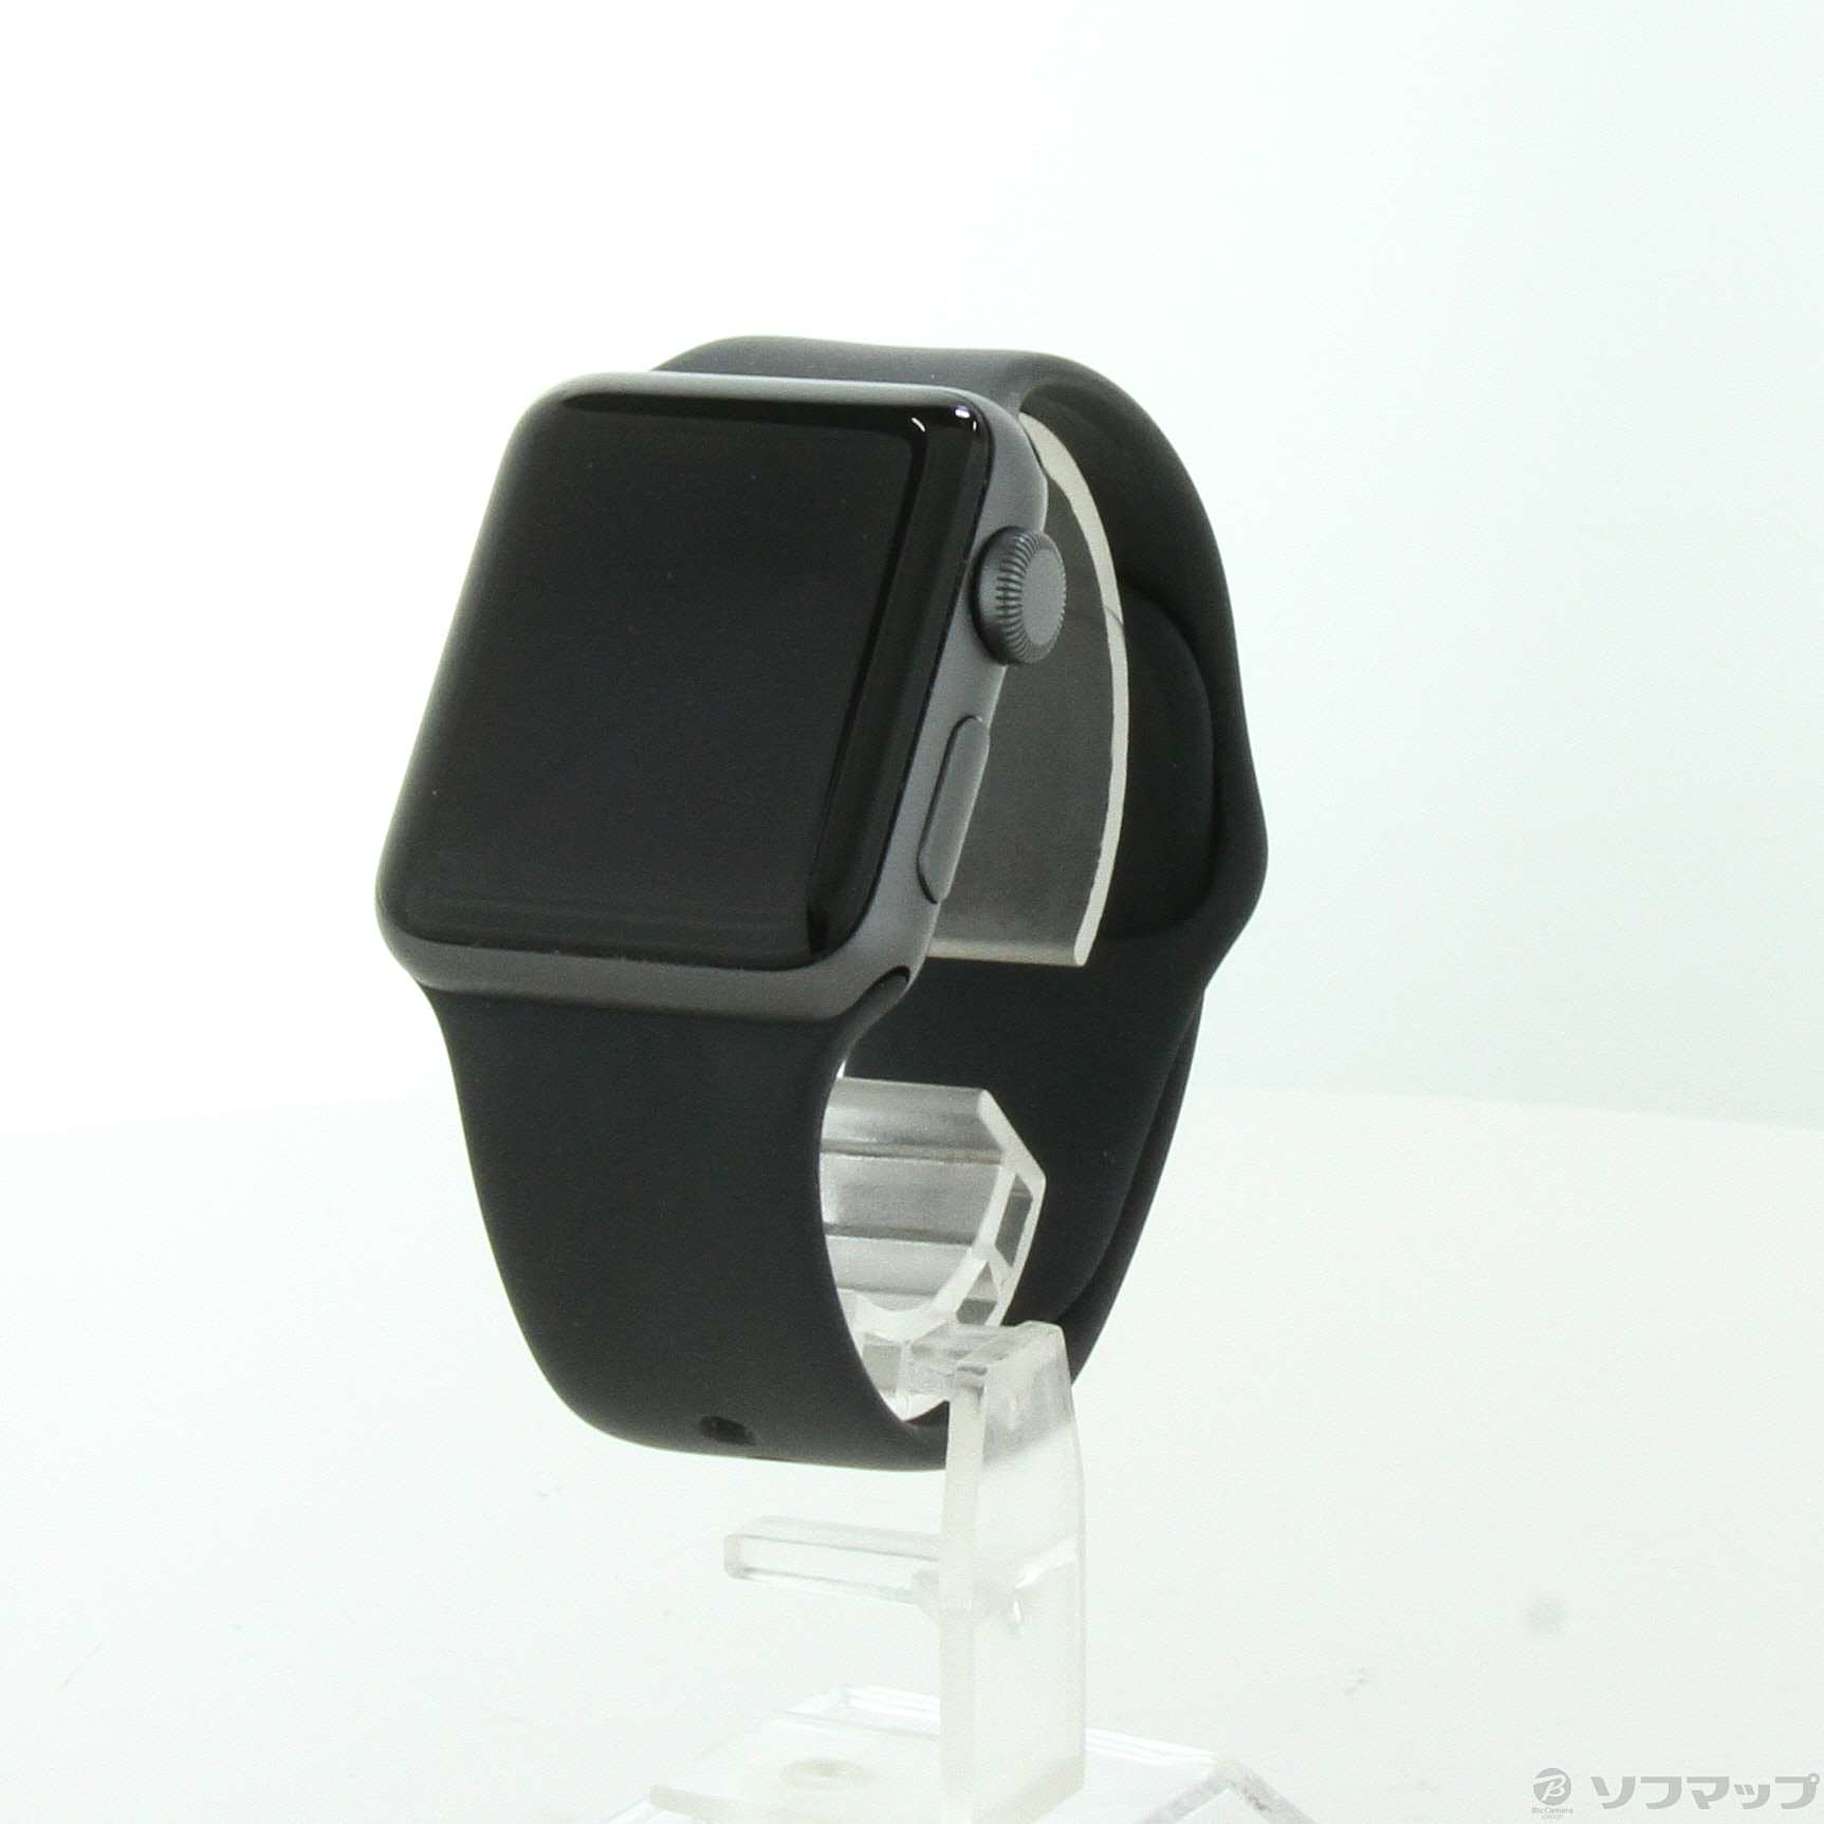 Apple Watch series 3 GPSモデル 38mm アルミニウム 値札 www